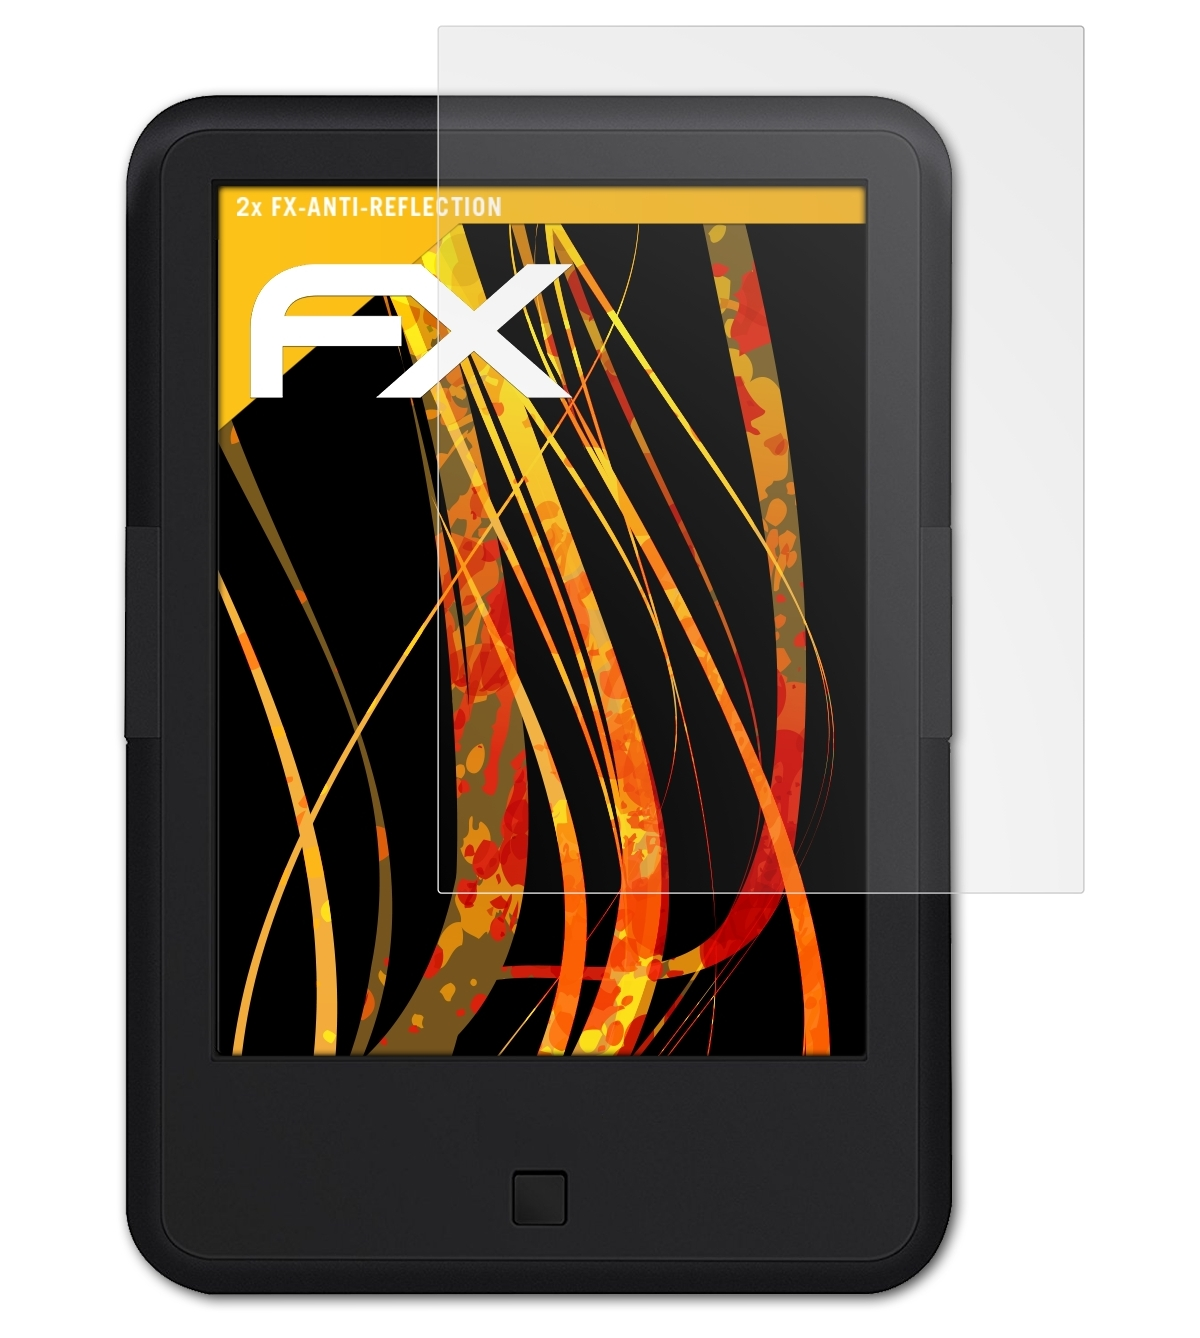 BOOX 2x C67ML) FX-Antireflex ATFOLIX Displayschutz(für